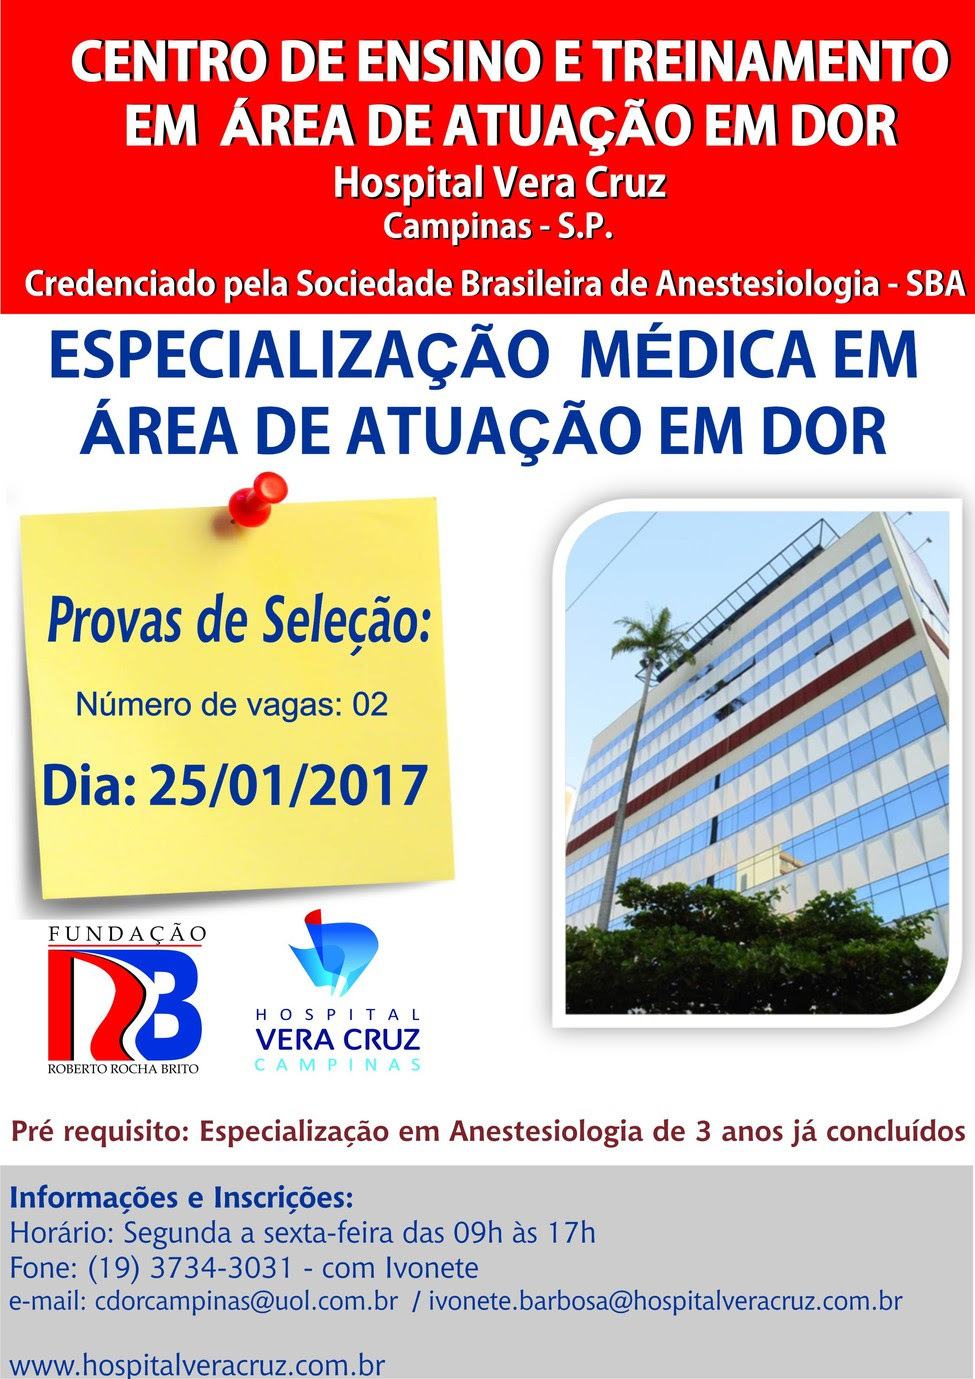 Clinica Adora - 13º Congresso Brasileiro de Dor – CBDor